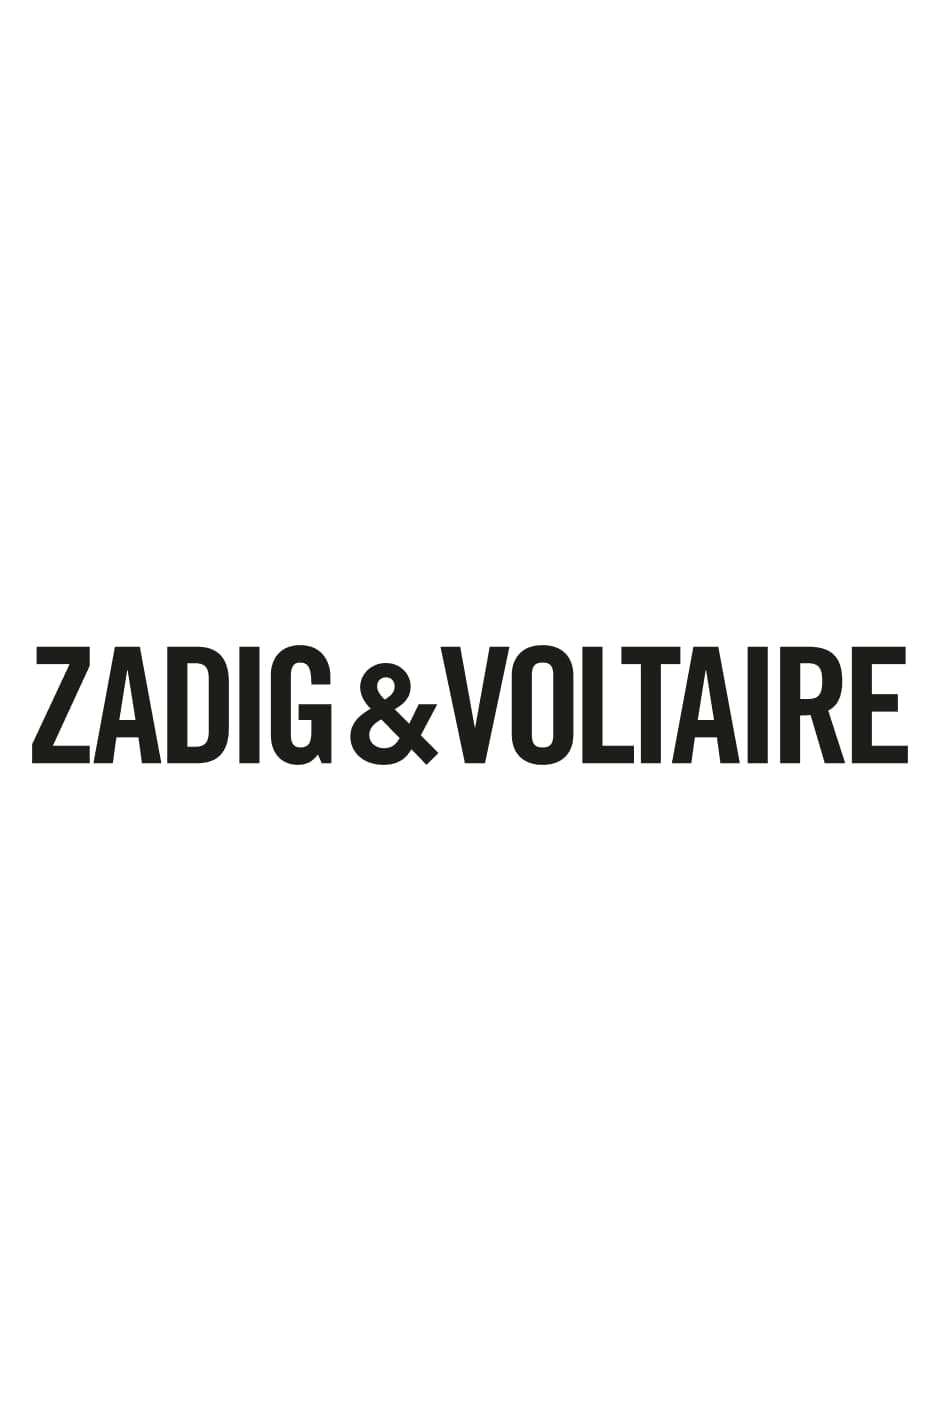 Libro "Zadig&Voltaire: Established 1997 in Paris" - Versione Francese La prima monografia sul marchio Zadig&Voltaire pubblicata in occasione del suo 25° anniversario - Versione Francese.